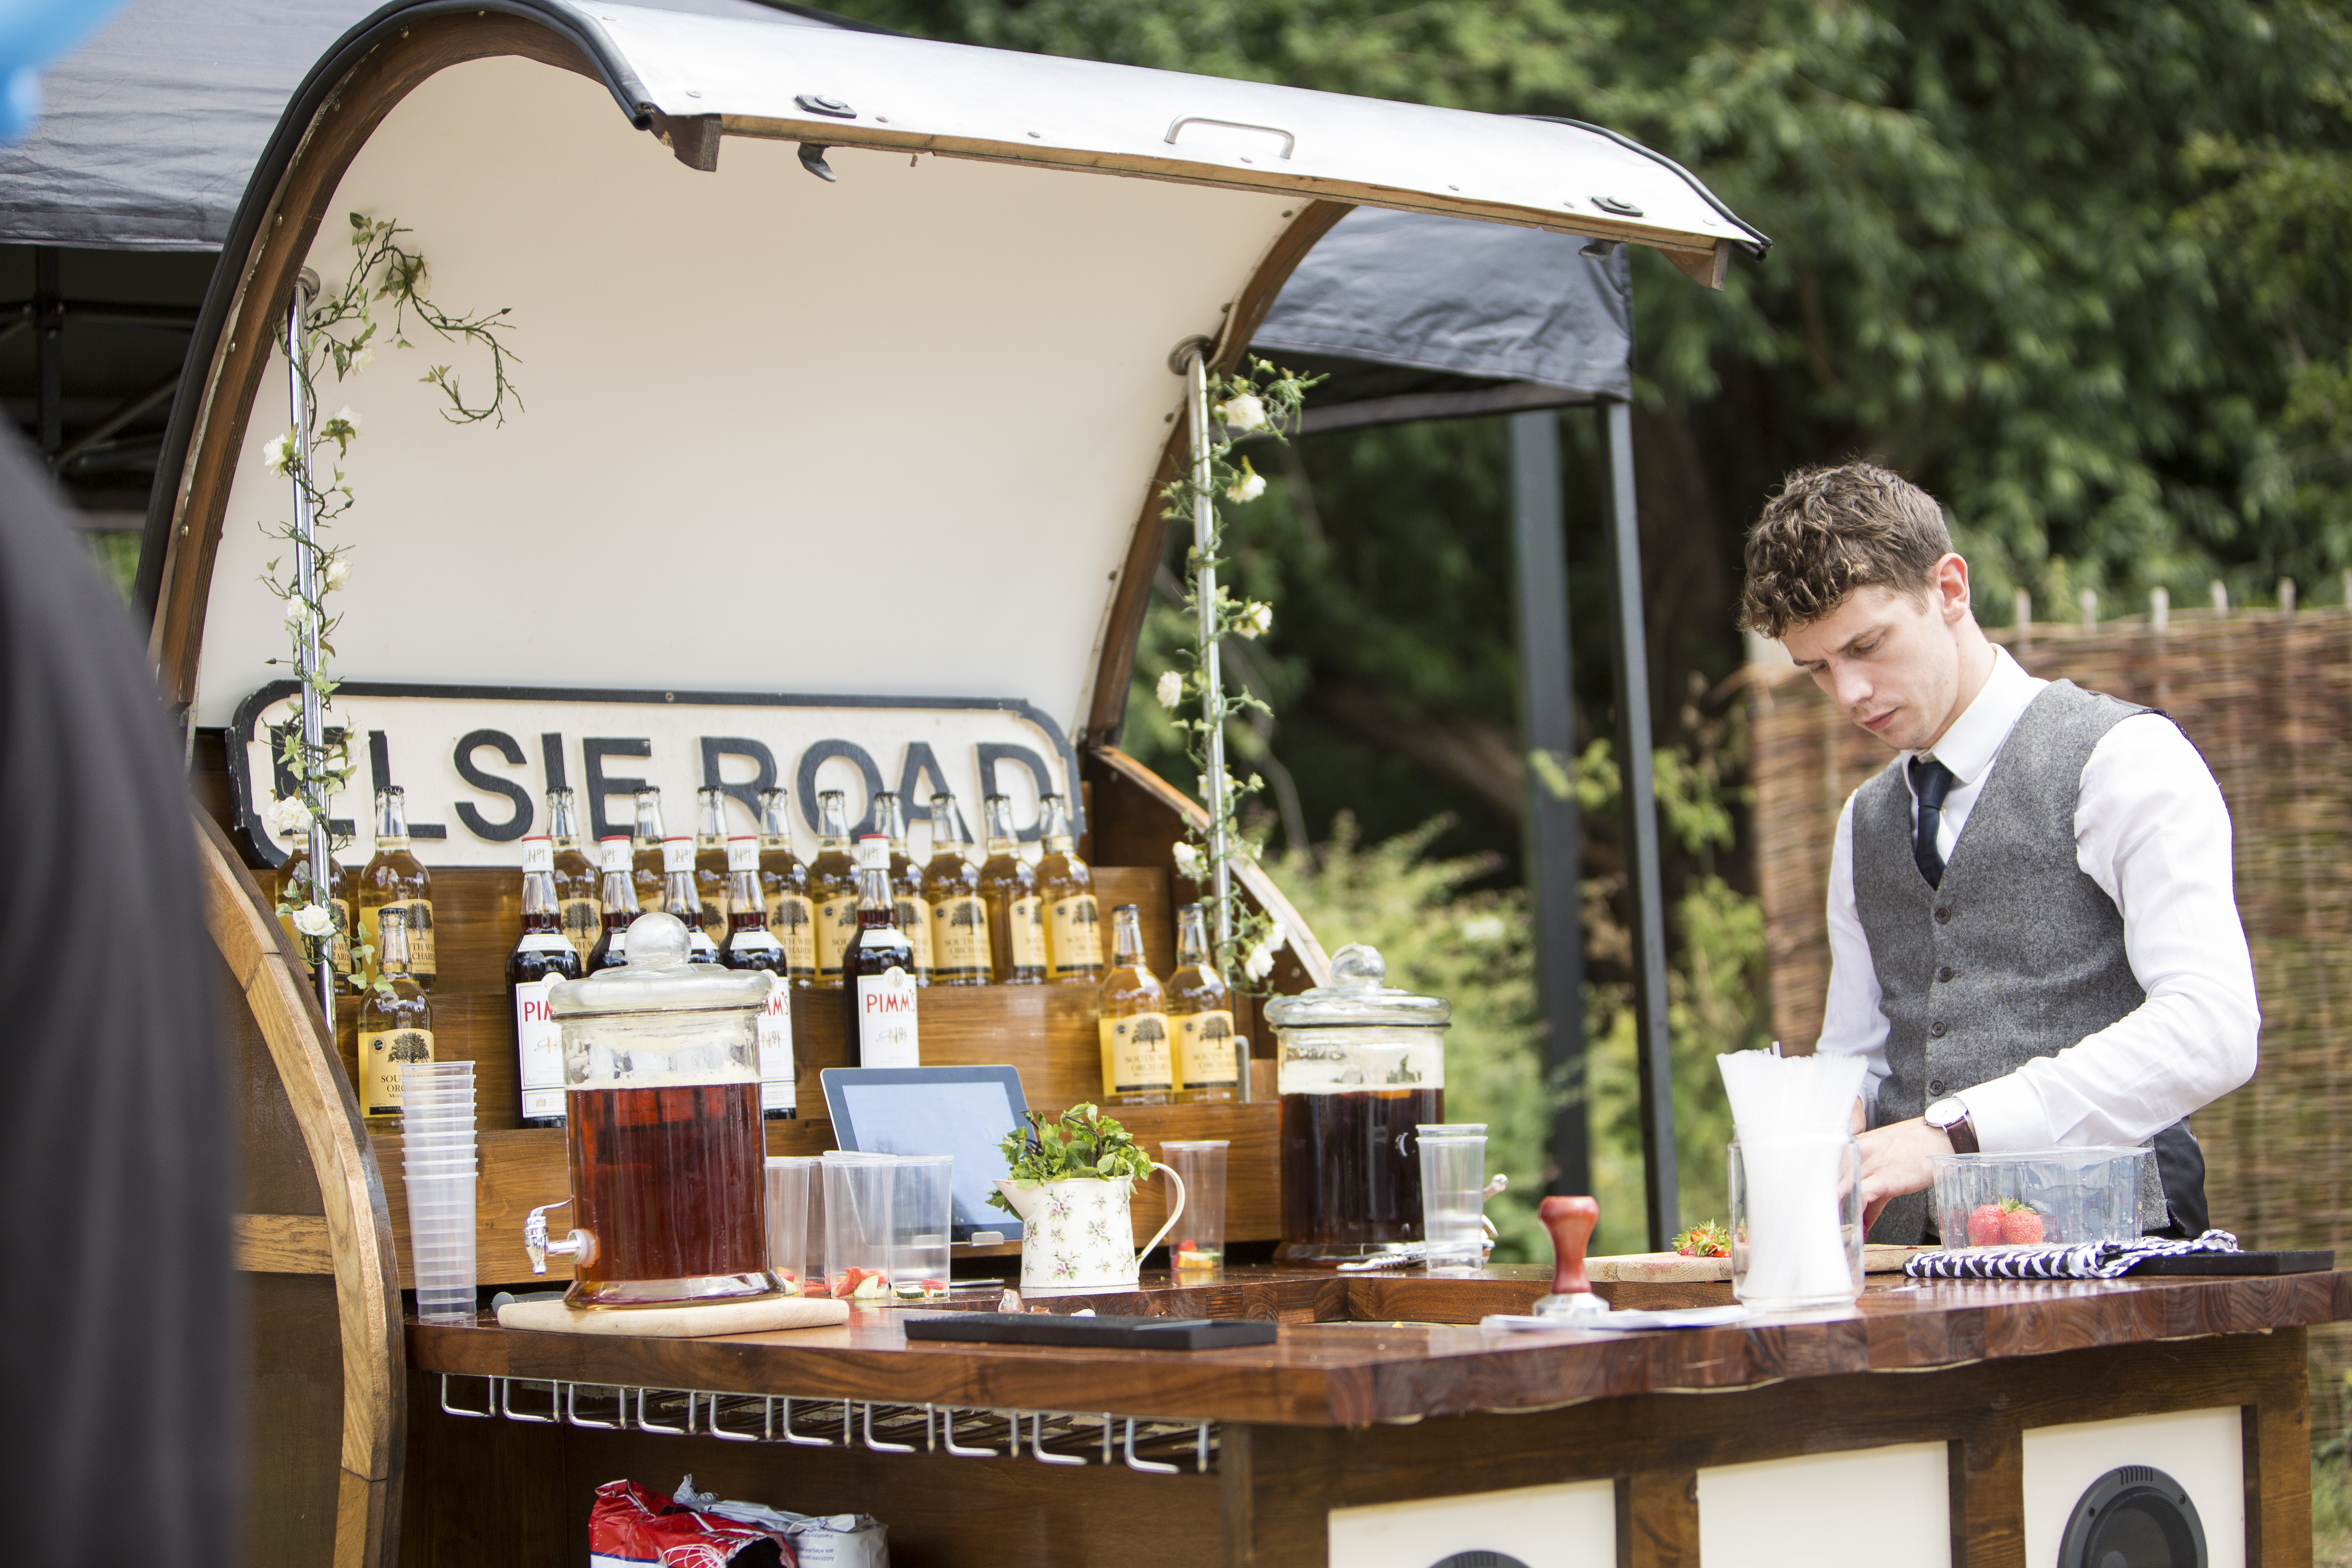 Croxley Park Summer Fete | Elsie Road Vintage Drinks Trike